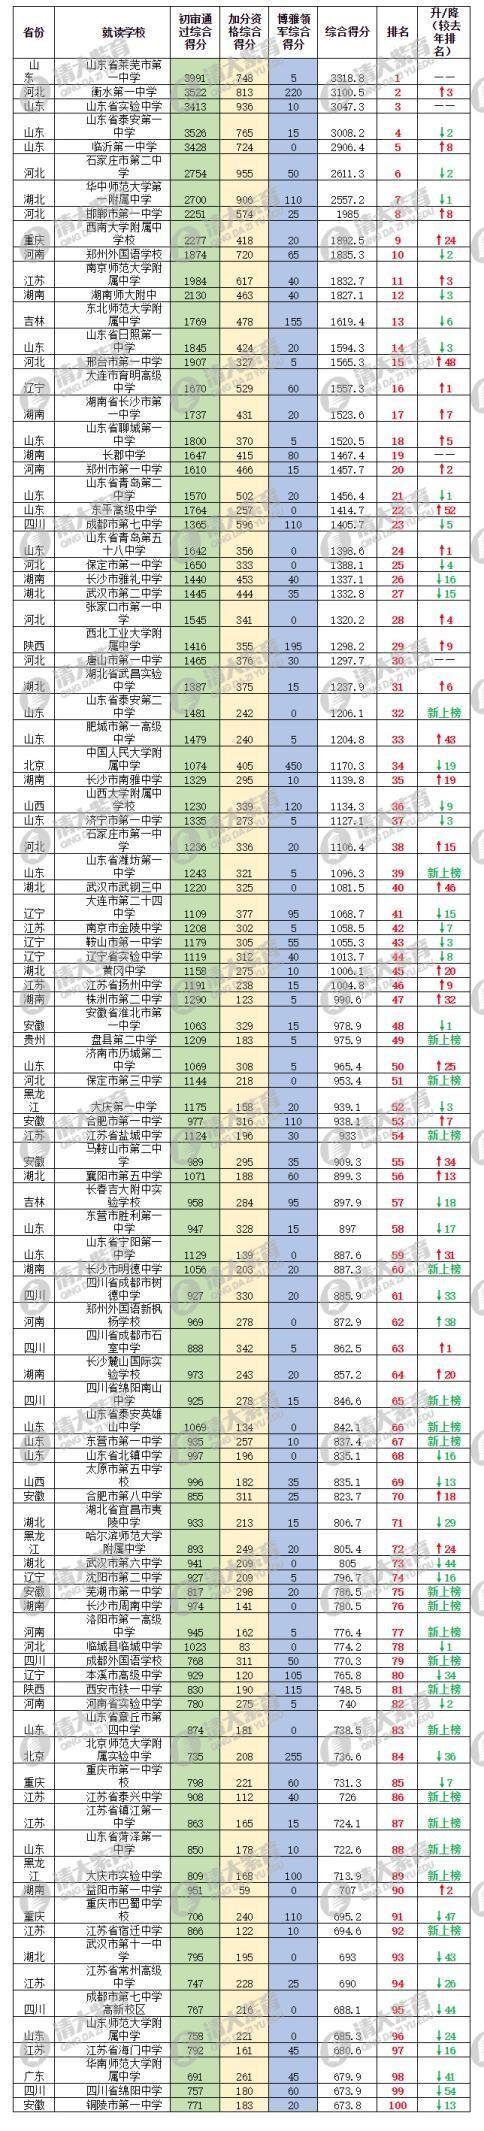 2、2017中国自主招生百强中学排行榜前十名学校